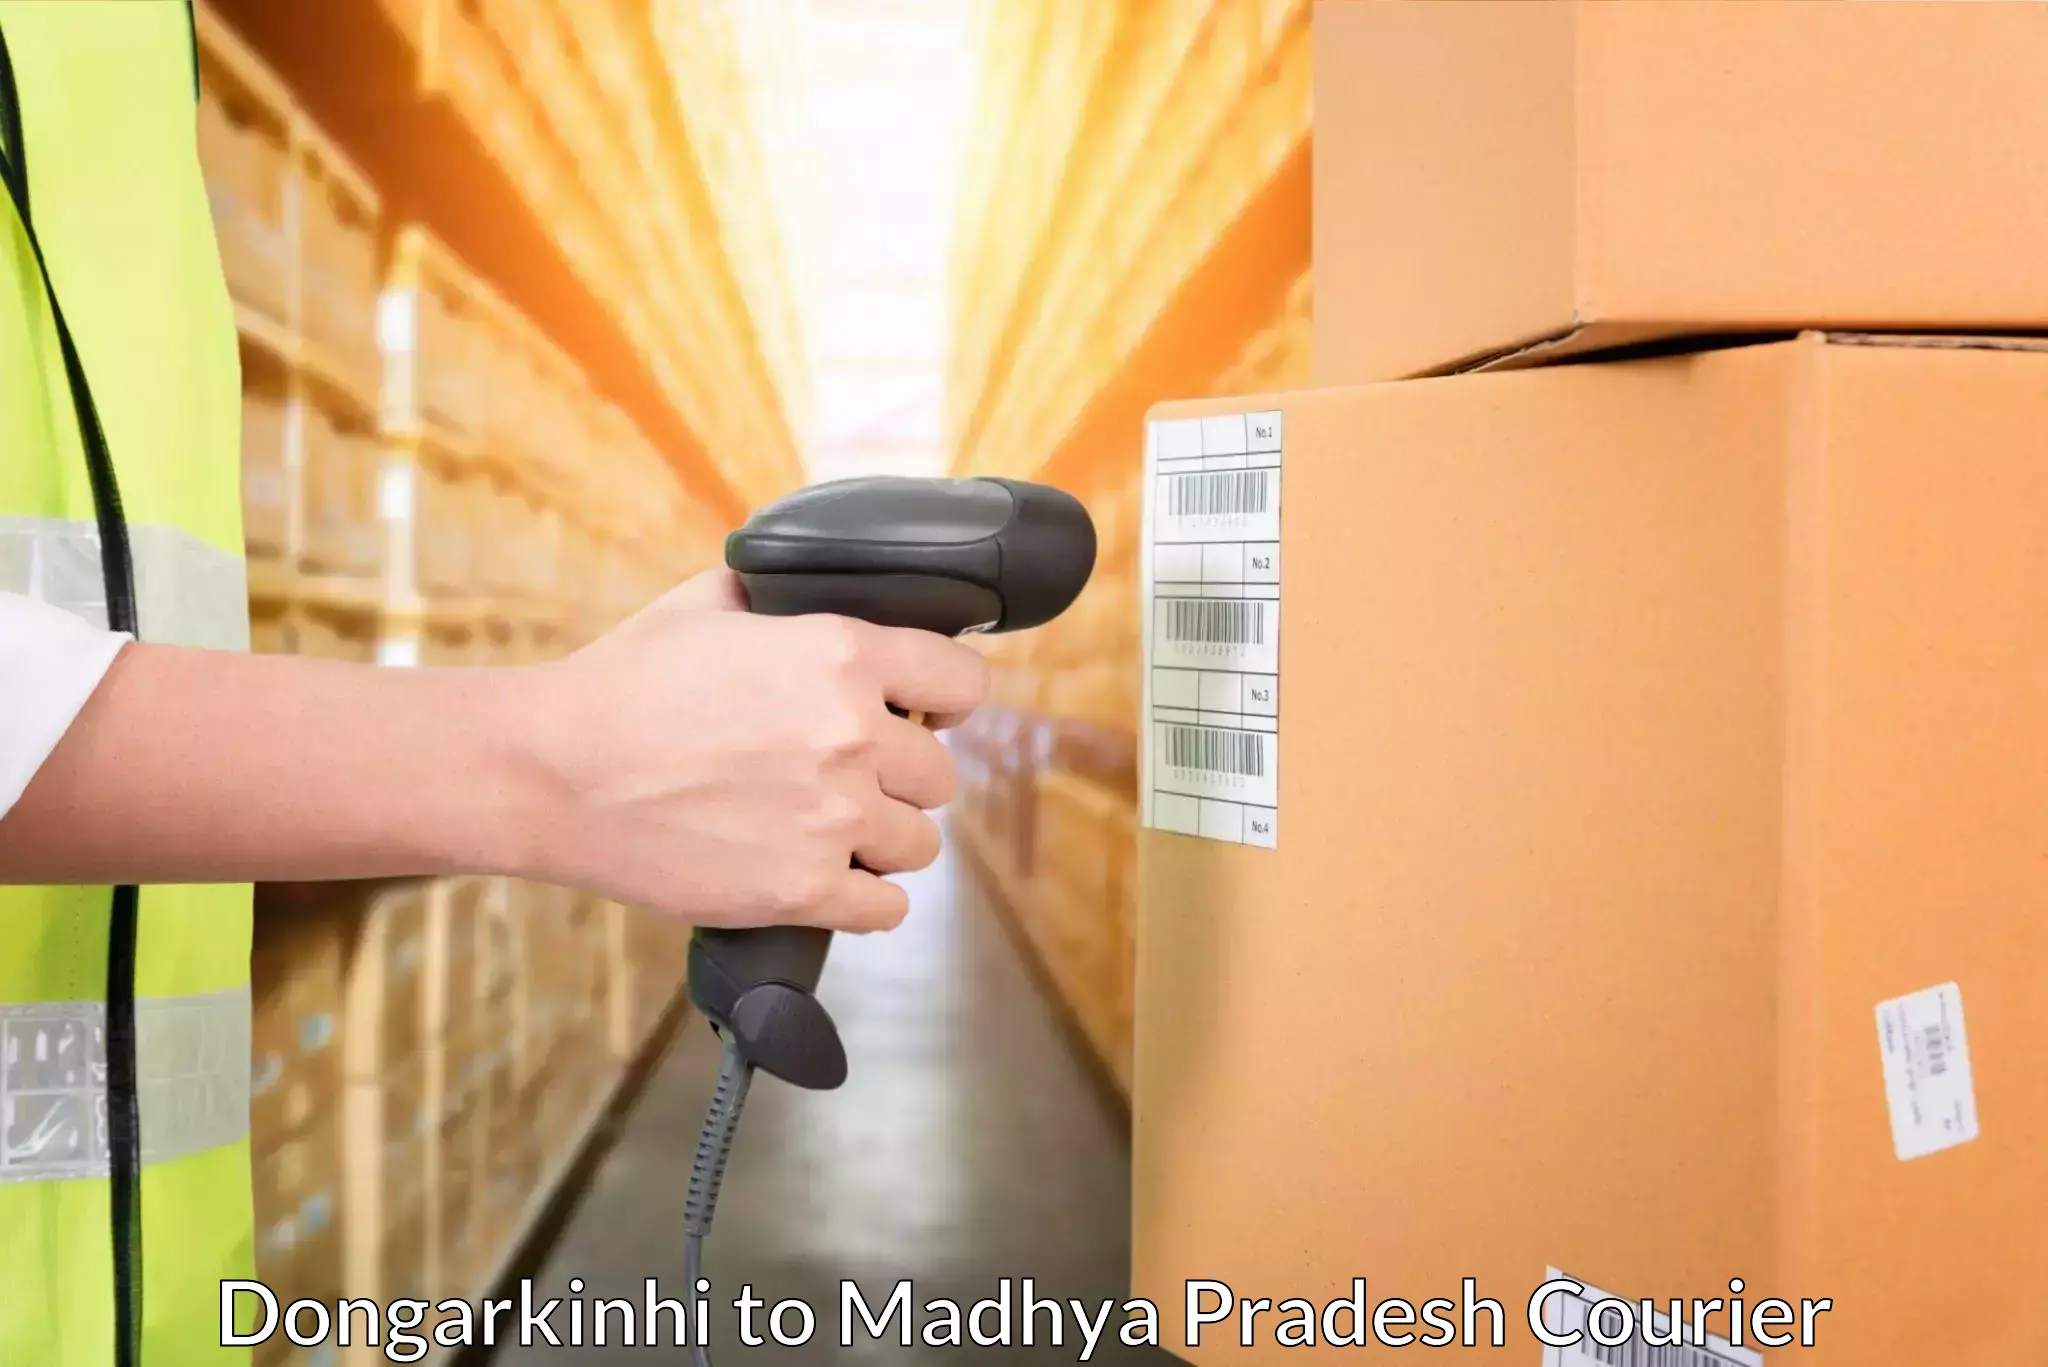 Professional courier handling Dongarkinhi to Rampur Naikin